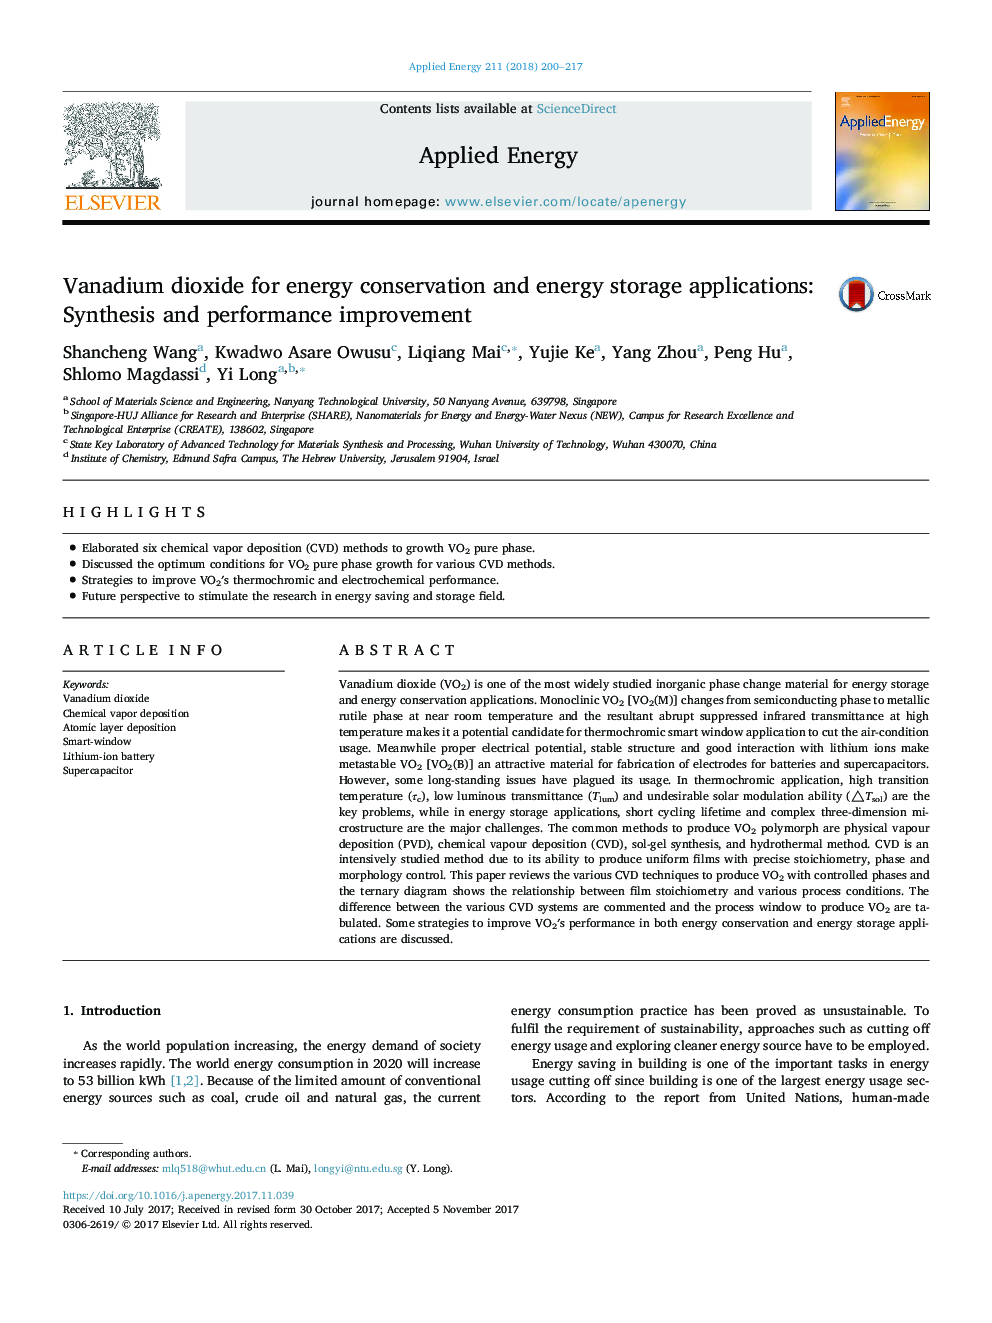 دی اکسید وانادیوم برای برنامه های ذخیره سازی انرژی و ذخیره سازی انرژی: سنتز و بهبود عملکرد 